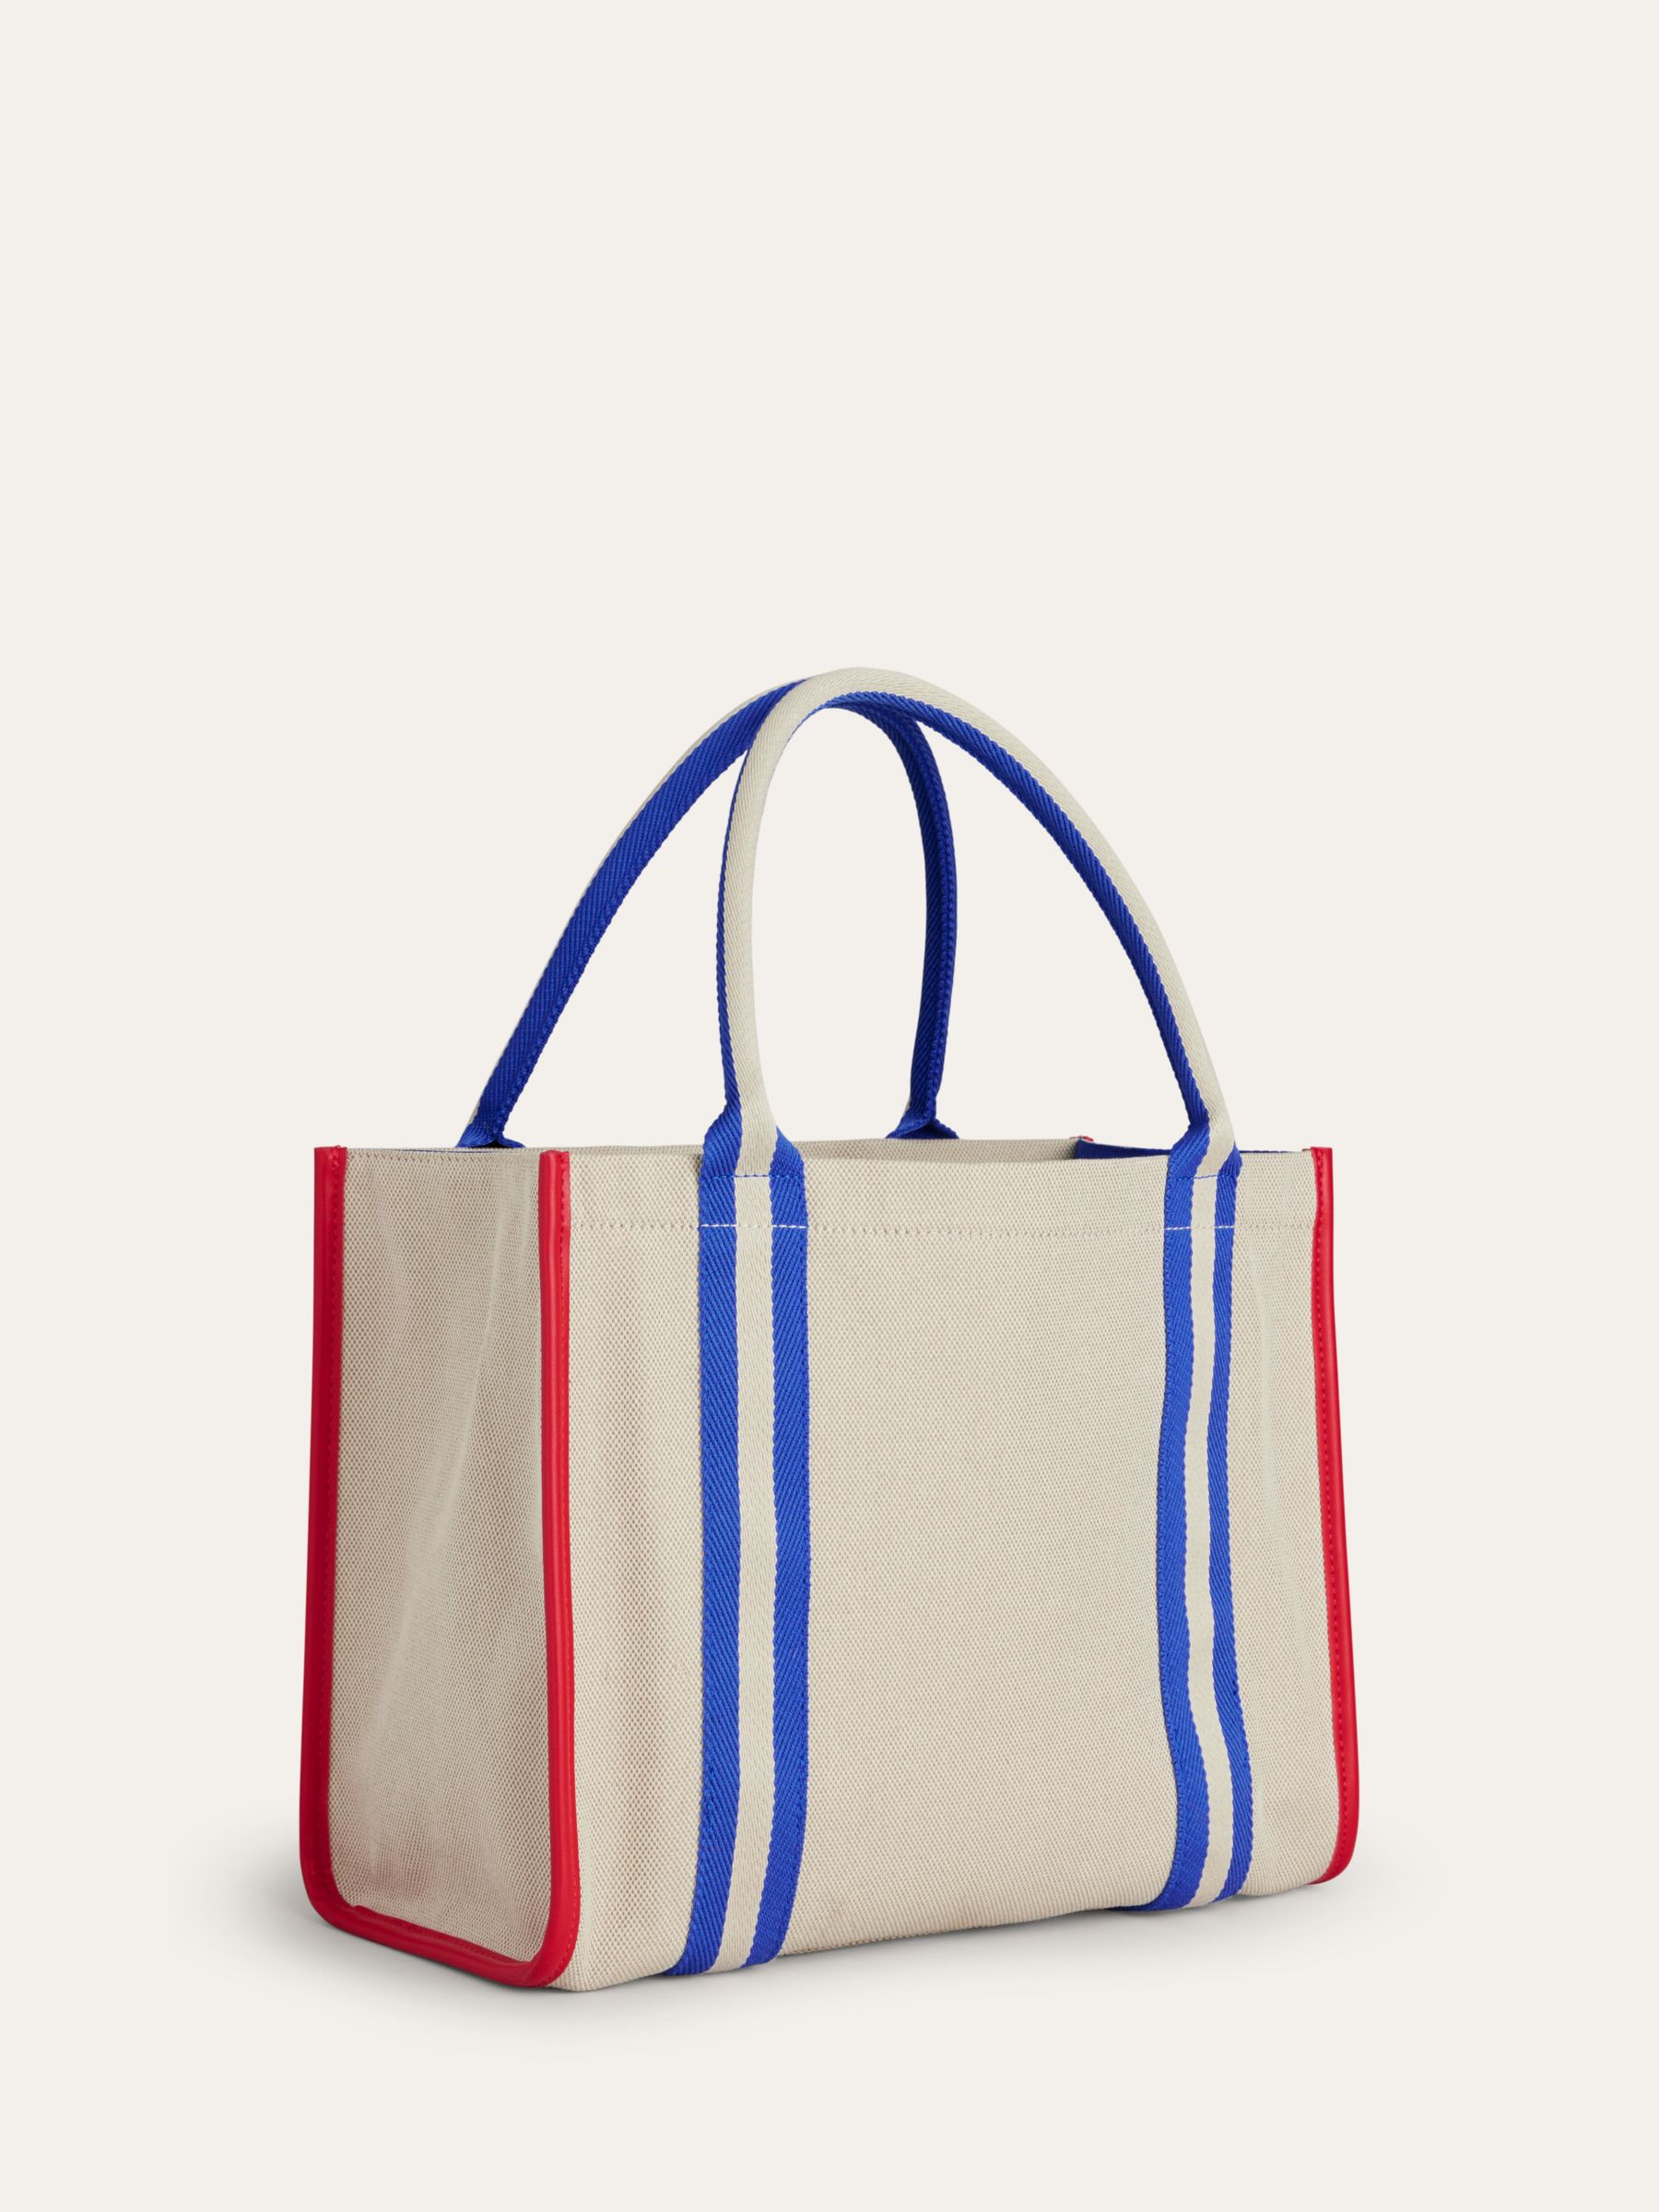 Boden Tilda Canvas Colourblock Tote Bag, Natural/Multi, One Size